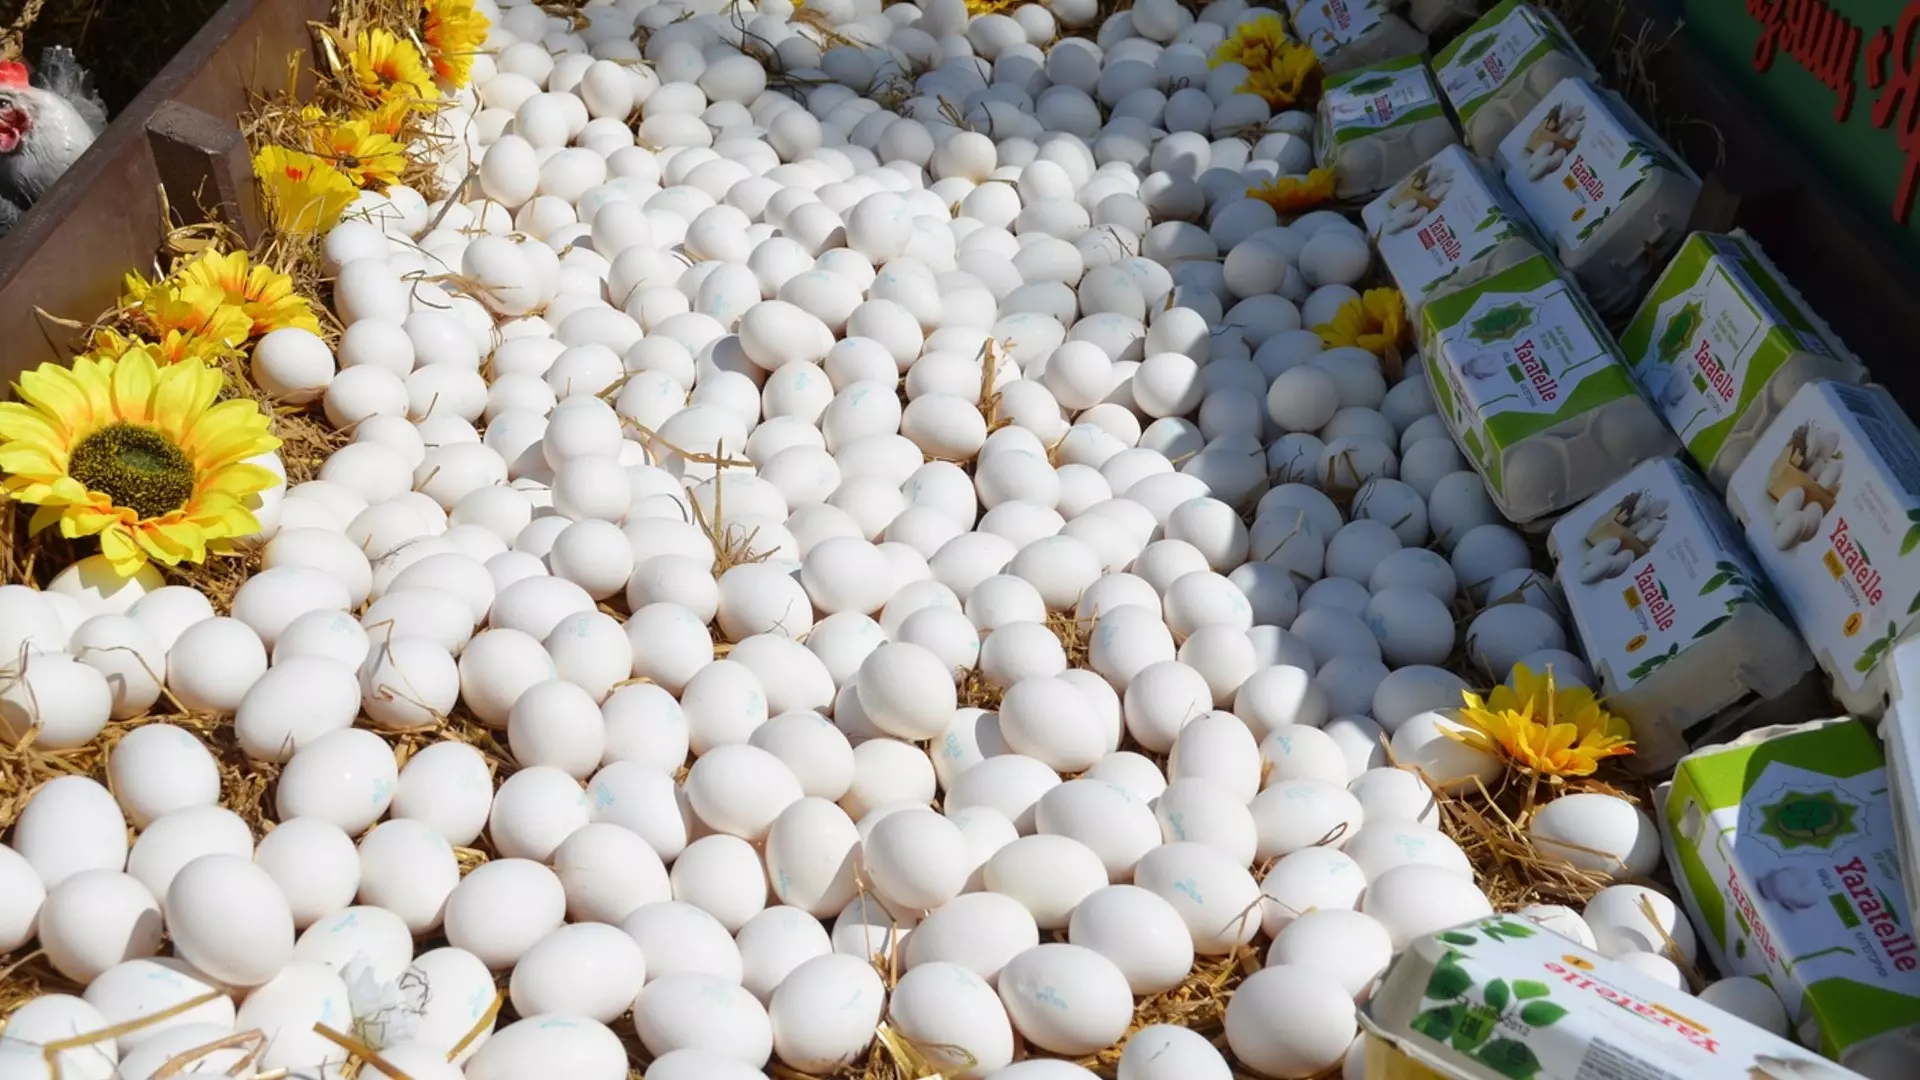 Цены на яйца выросли почти в два раза